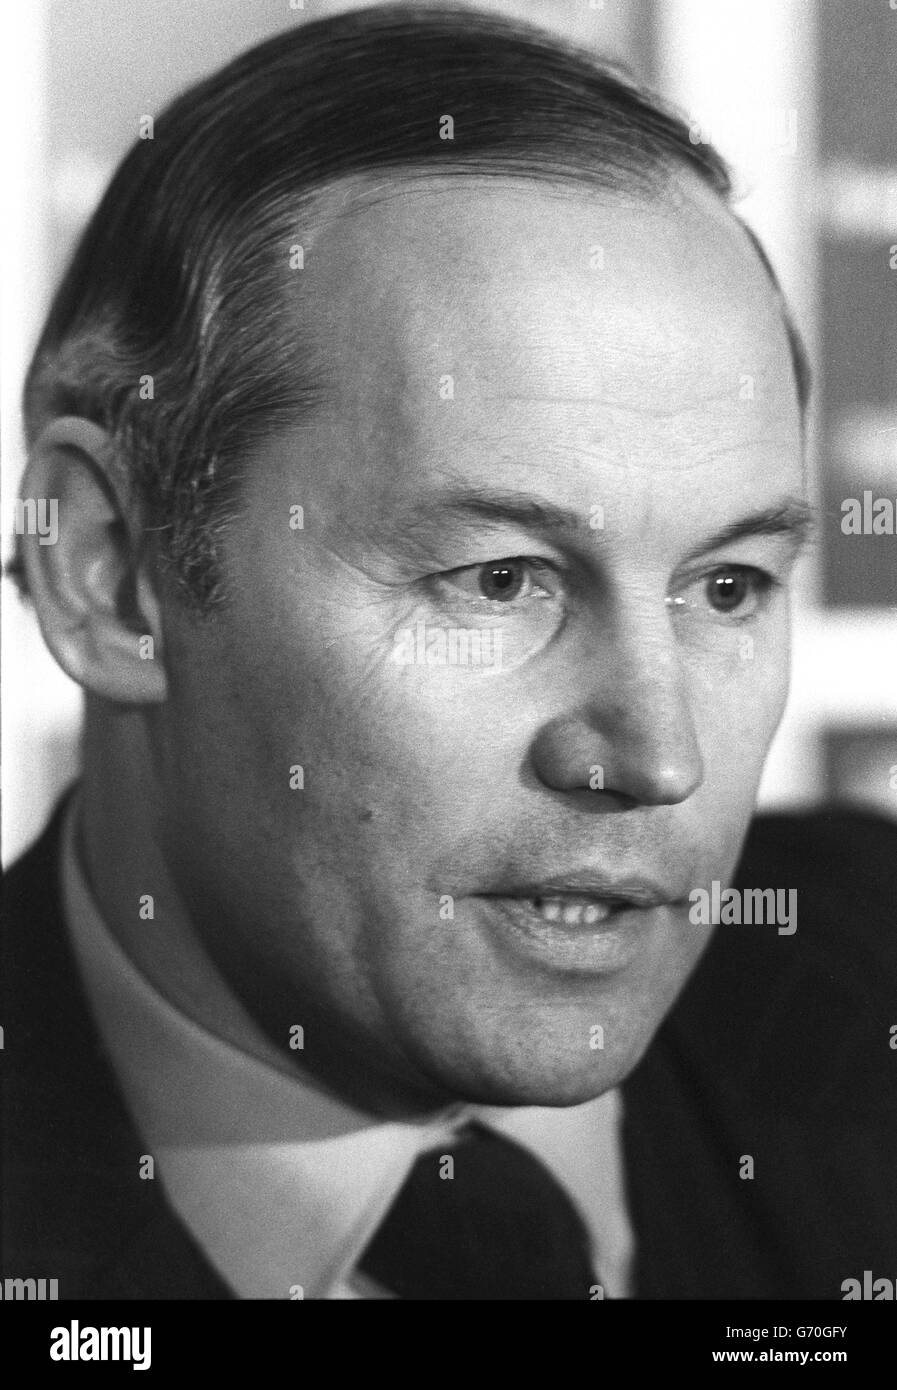 Crime - St James's Square Shooting - Comandante Bill Hucklesby - Londra. Il comandante Bill Hucklesby, capo della squadra antiterrorista di Scotland Yard. 2/5/1984 Foto Stock